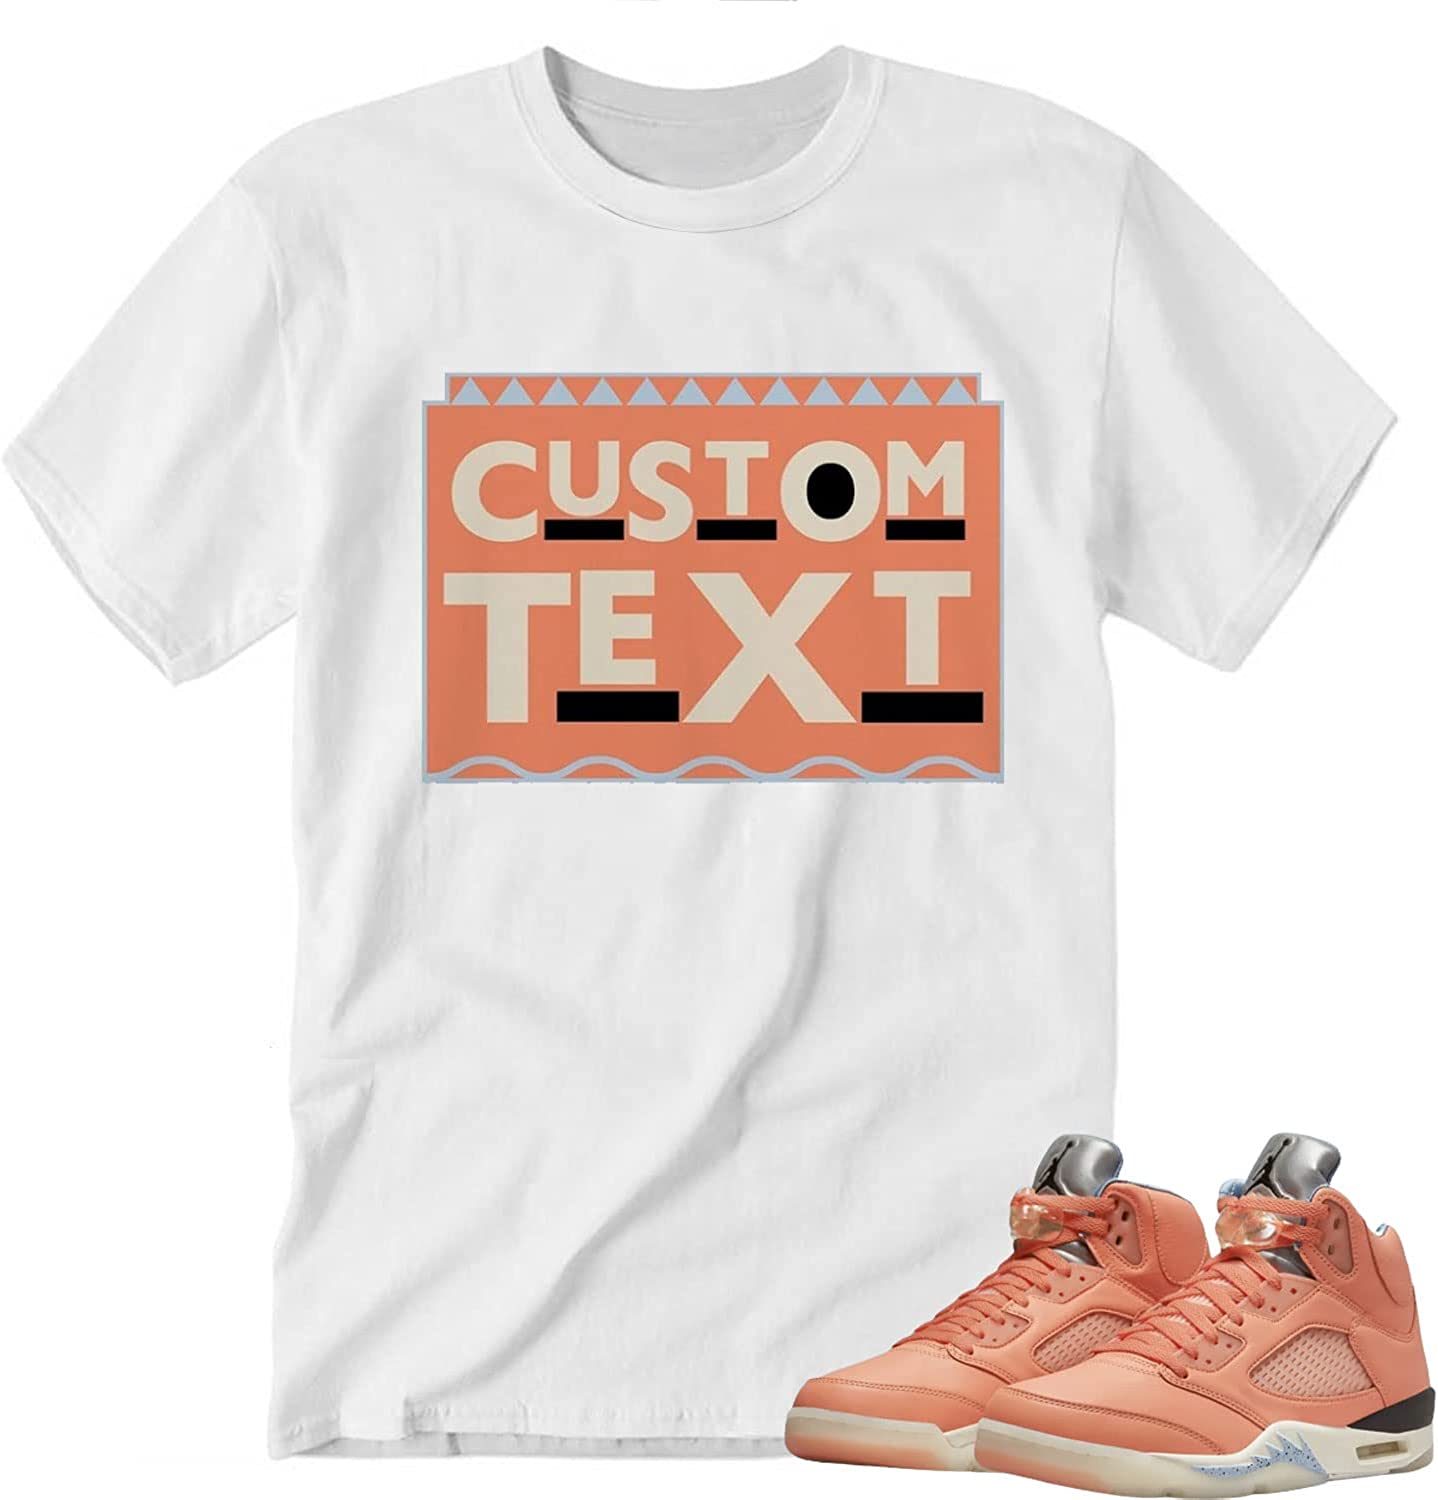 Custom Text Shirt to Match J0rdan 5 D.J Khaled Crimson Bliss, Tee Matching for Sneaker J0rdan D.J Khaled Crimson Bliss, Gift for Sneaker Crimson Bliss, Retro D.J Crimson Bliss t Shirts to J0rdan – JOT036